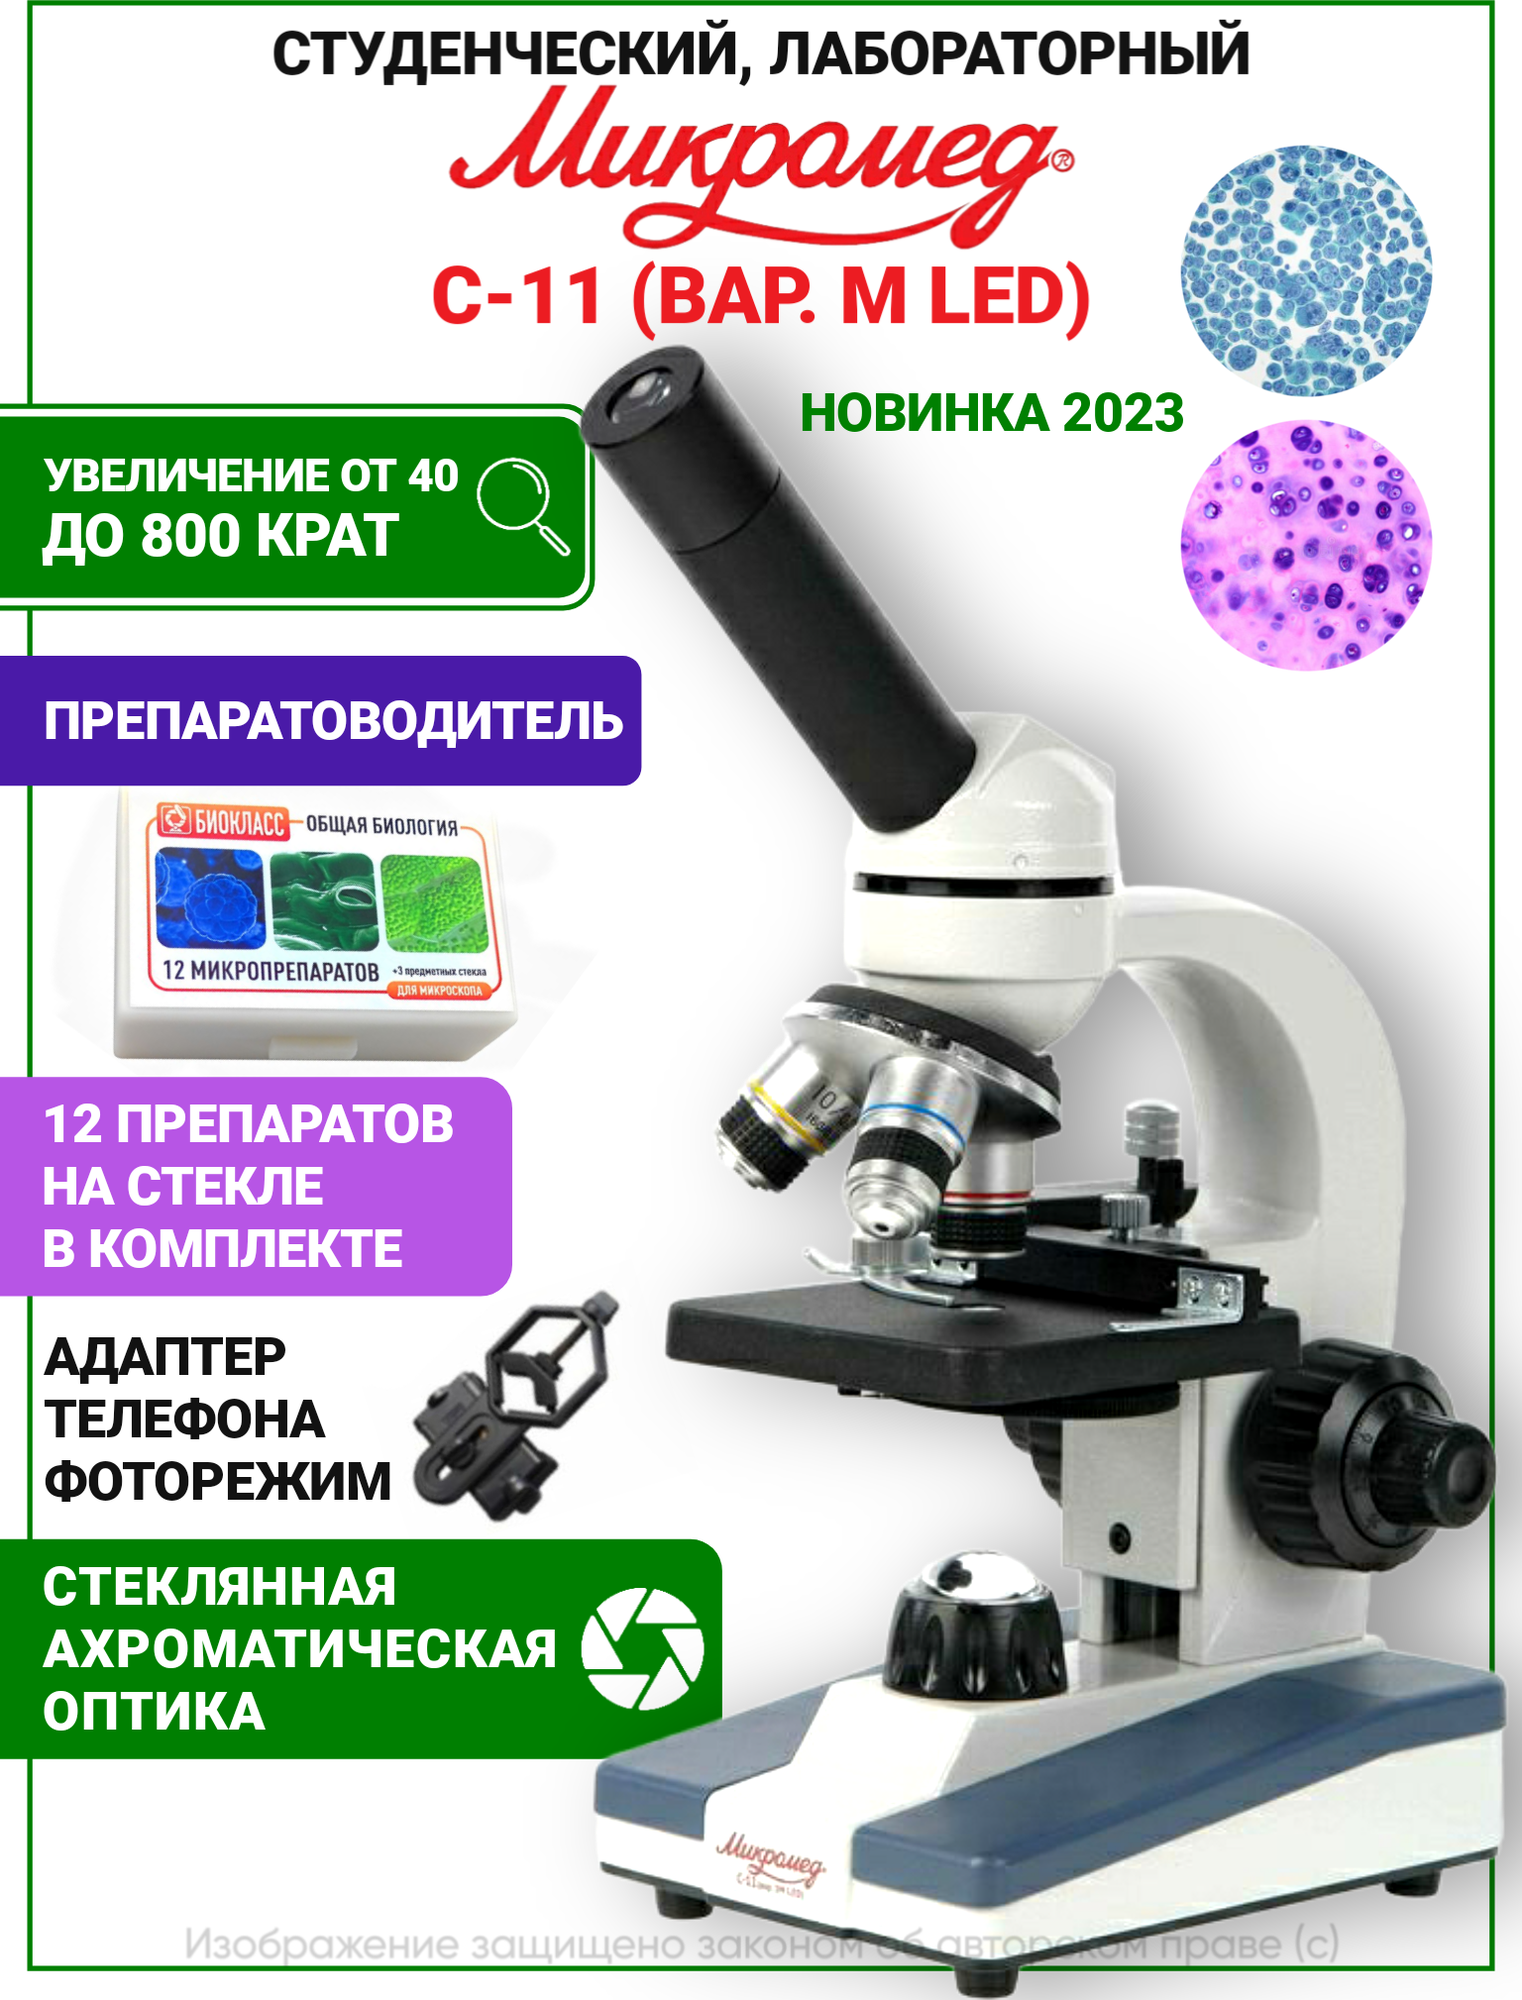 Микроскоп школьный С-11 биологический (вар. 1M LED) с препаратами и адаптером для смартфона